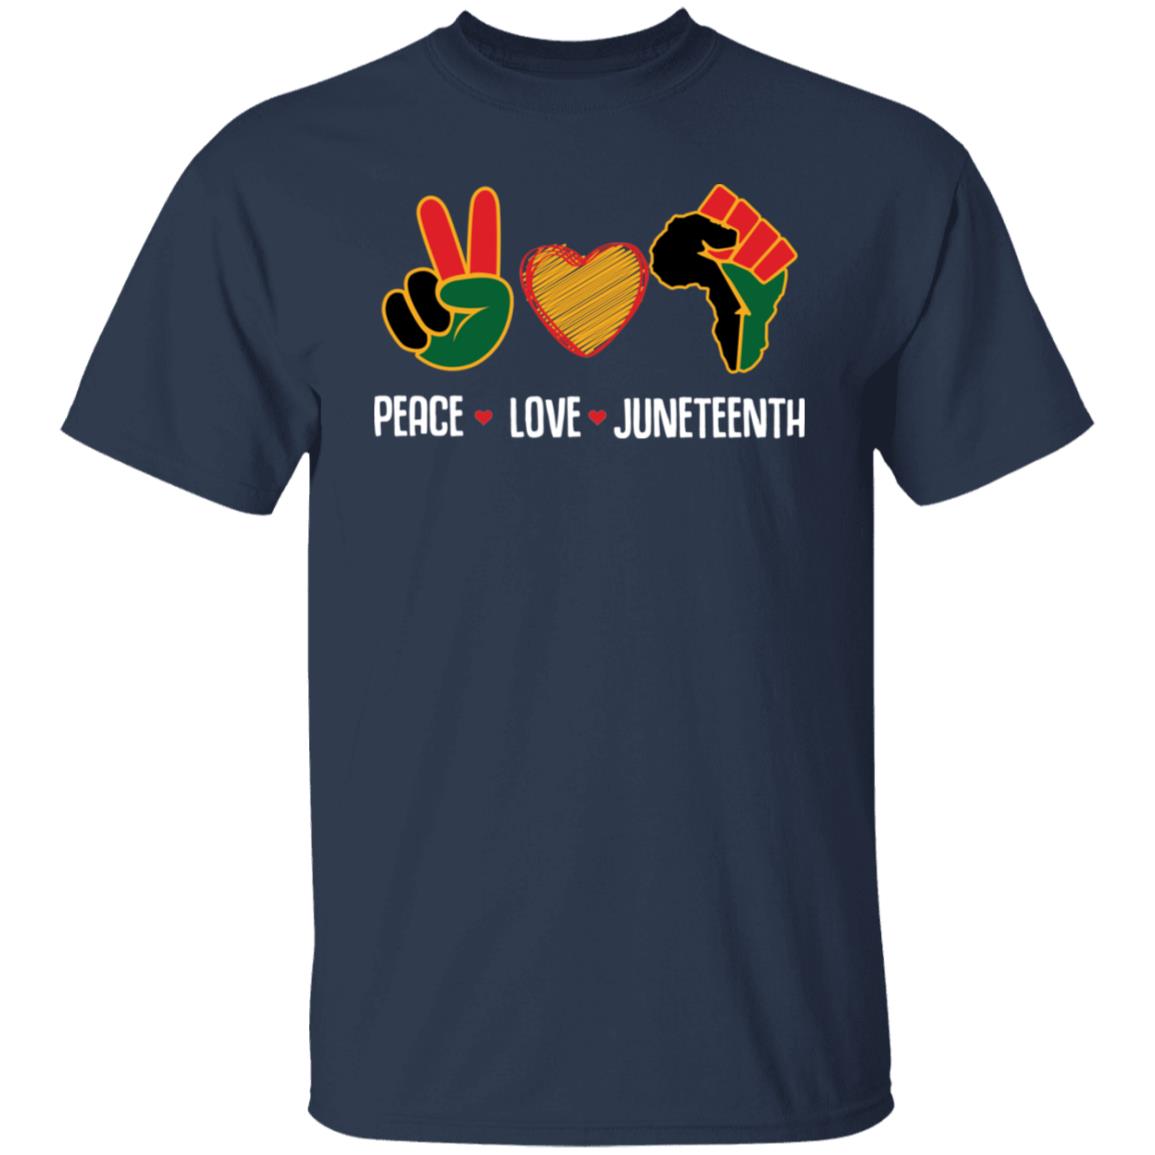 Peace Love Juneteenth T-shirt Apparel Gearment Unisex Tee Navy S